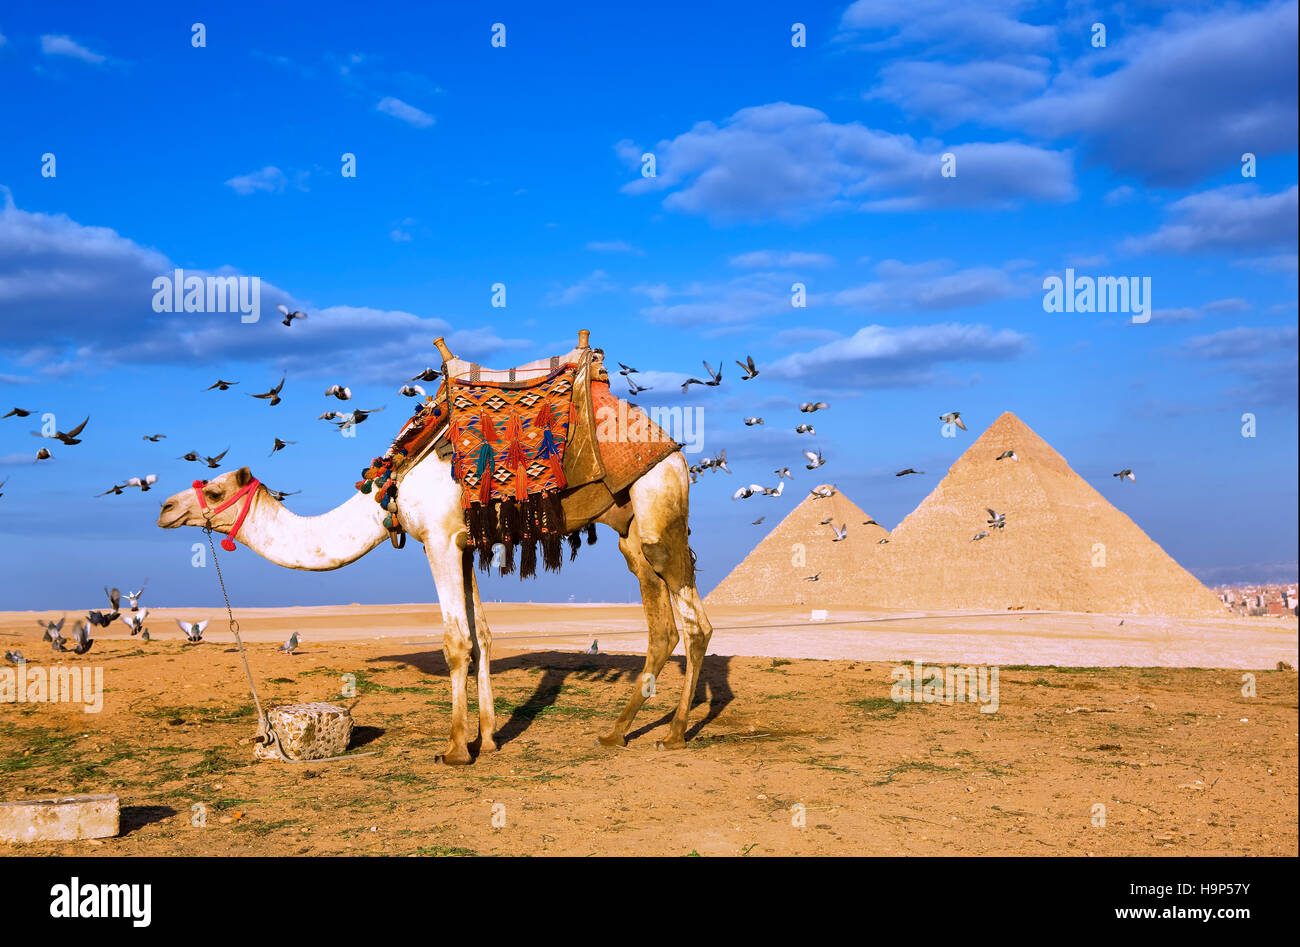 Piramidi di Giza, il Cairo, Egitto Foto Stock